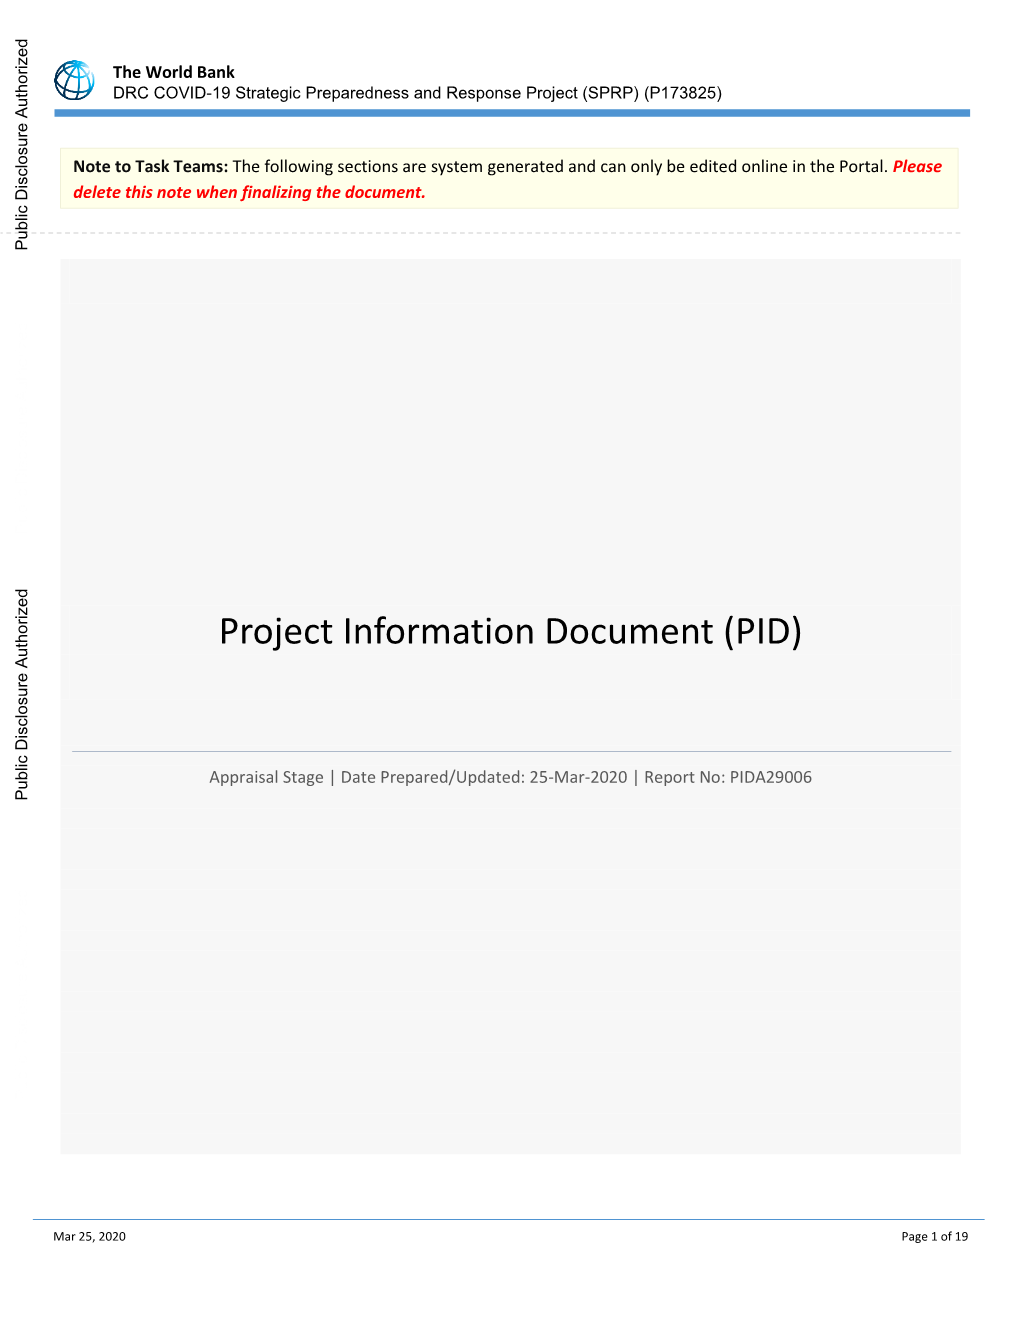 DRC COVID-19 Strategic Preparedness and Response Project (SPRP) (P173825)